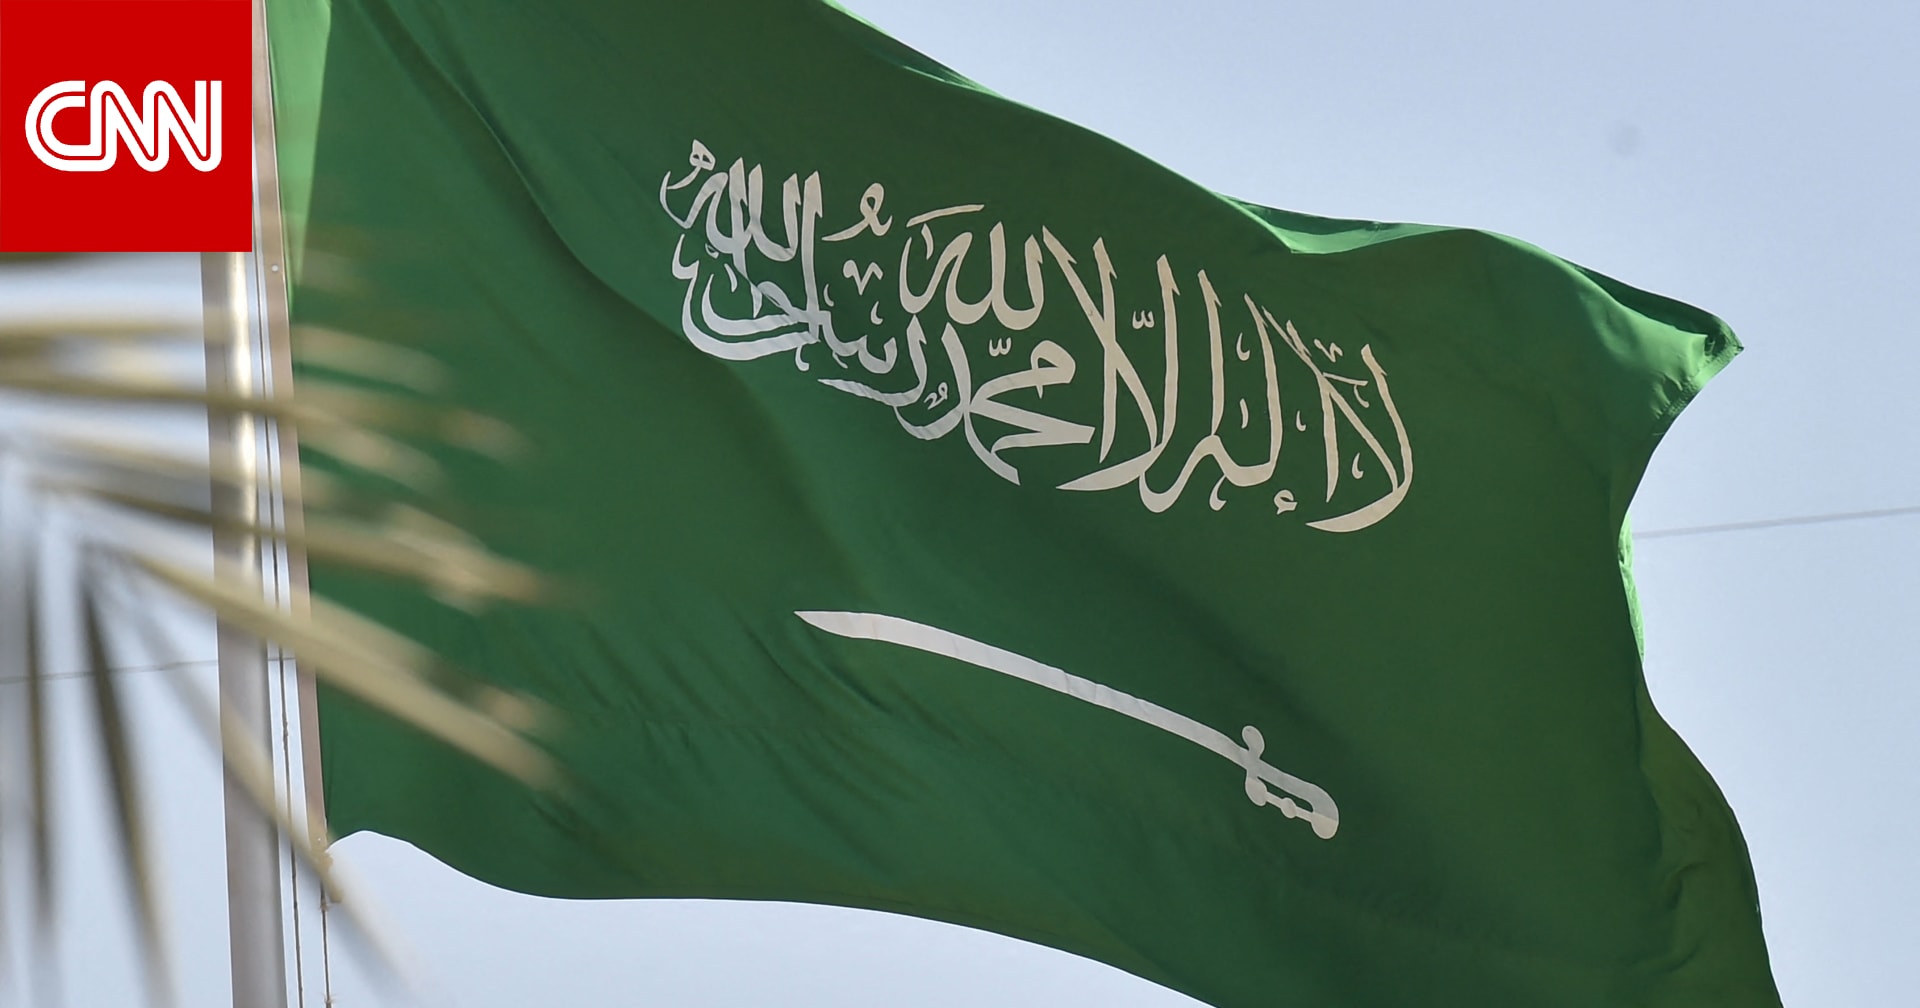 السعودية تعلن عقد قمة عربية إسلامية "مشتركة غير عادية بشكل استثنائي" بشأن غزة السبت